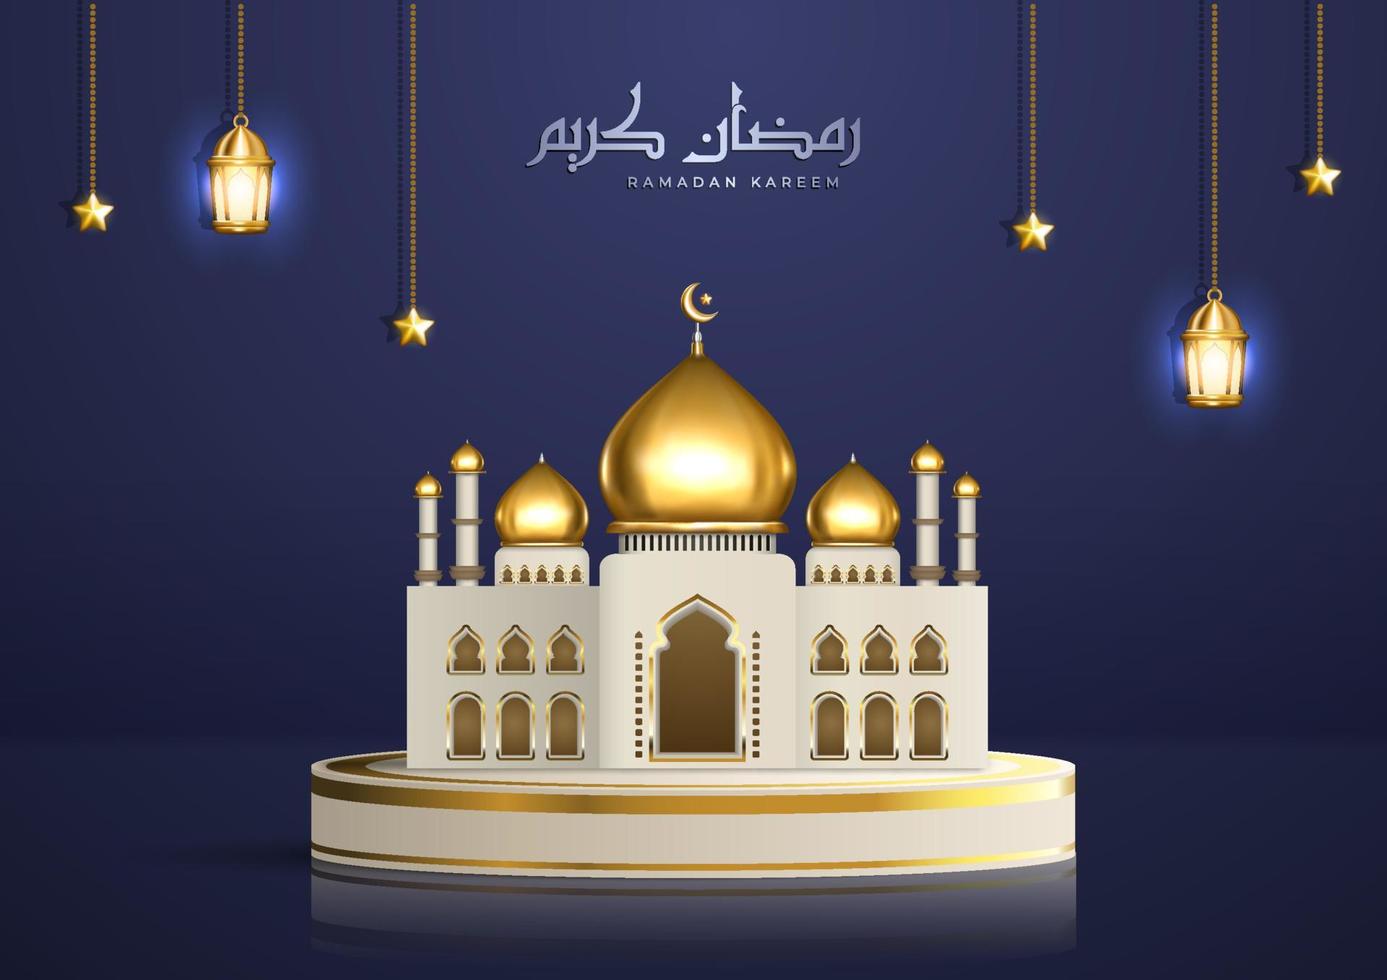 ilustração islâmica realista com caligrafia árabe e mesquita dourada no pódio do produto. saudação ramadan kareem com lanternas e estrelas penduradas vetor